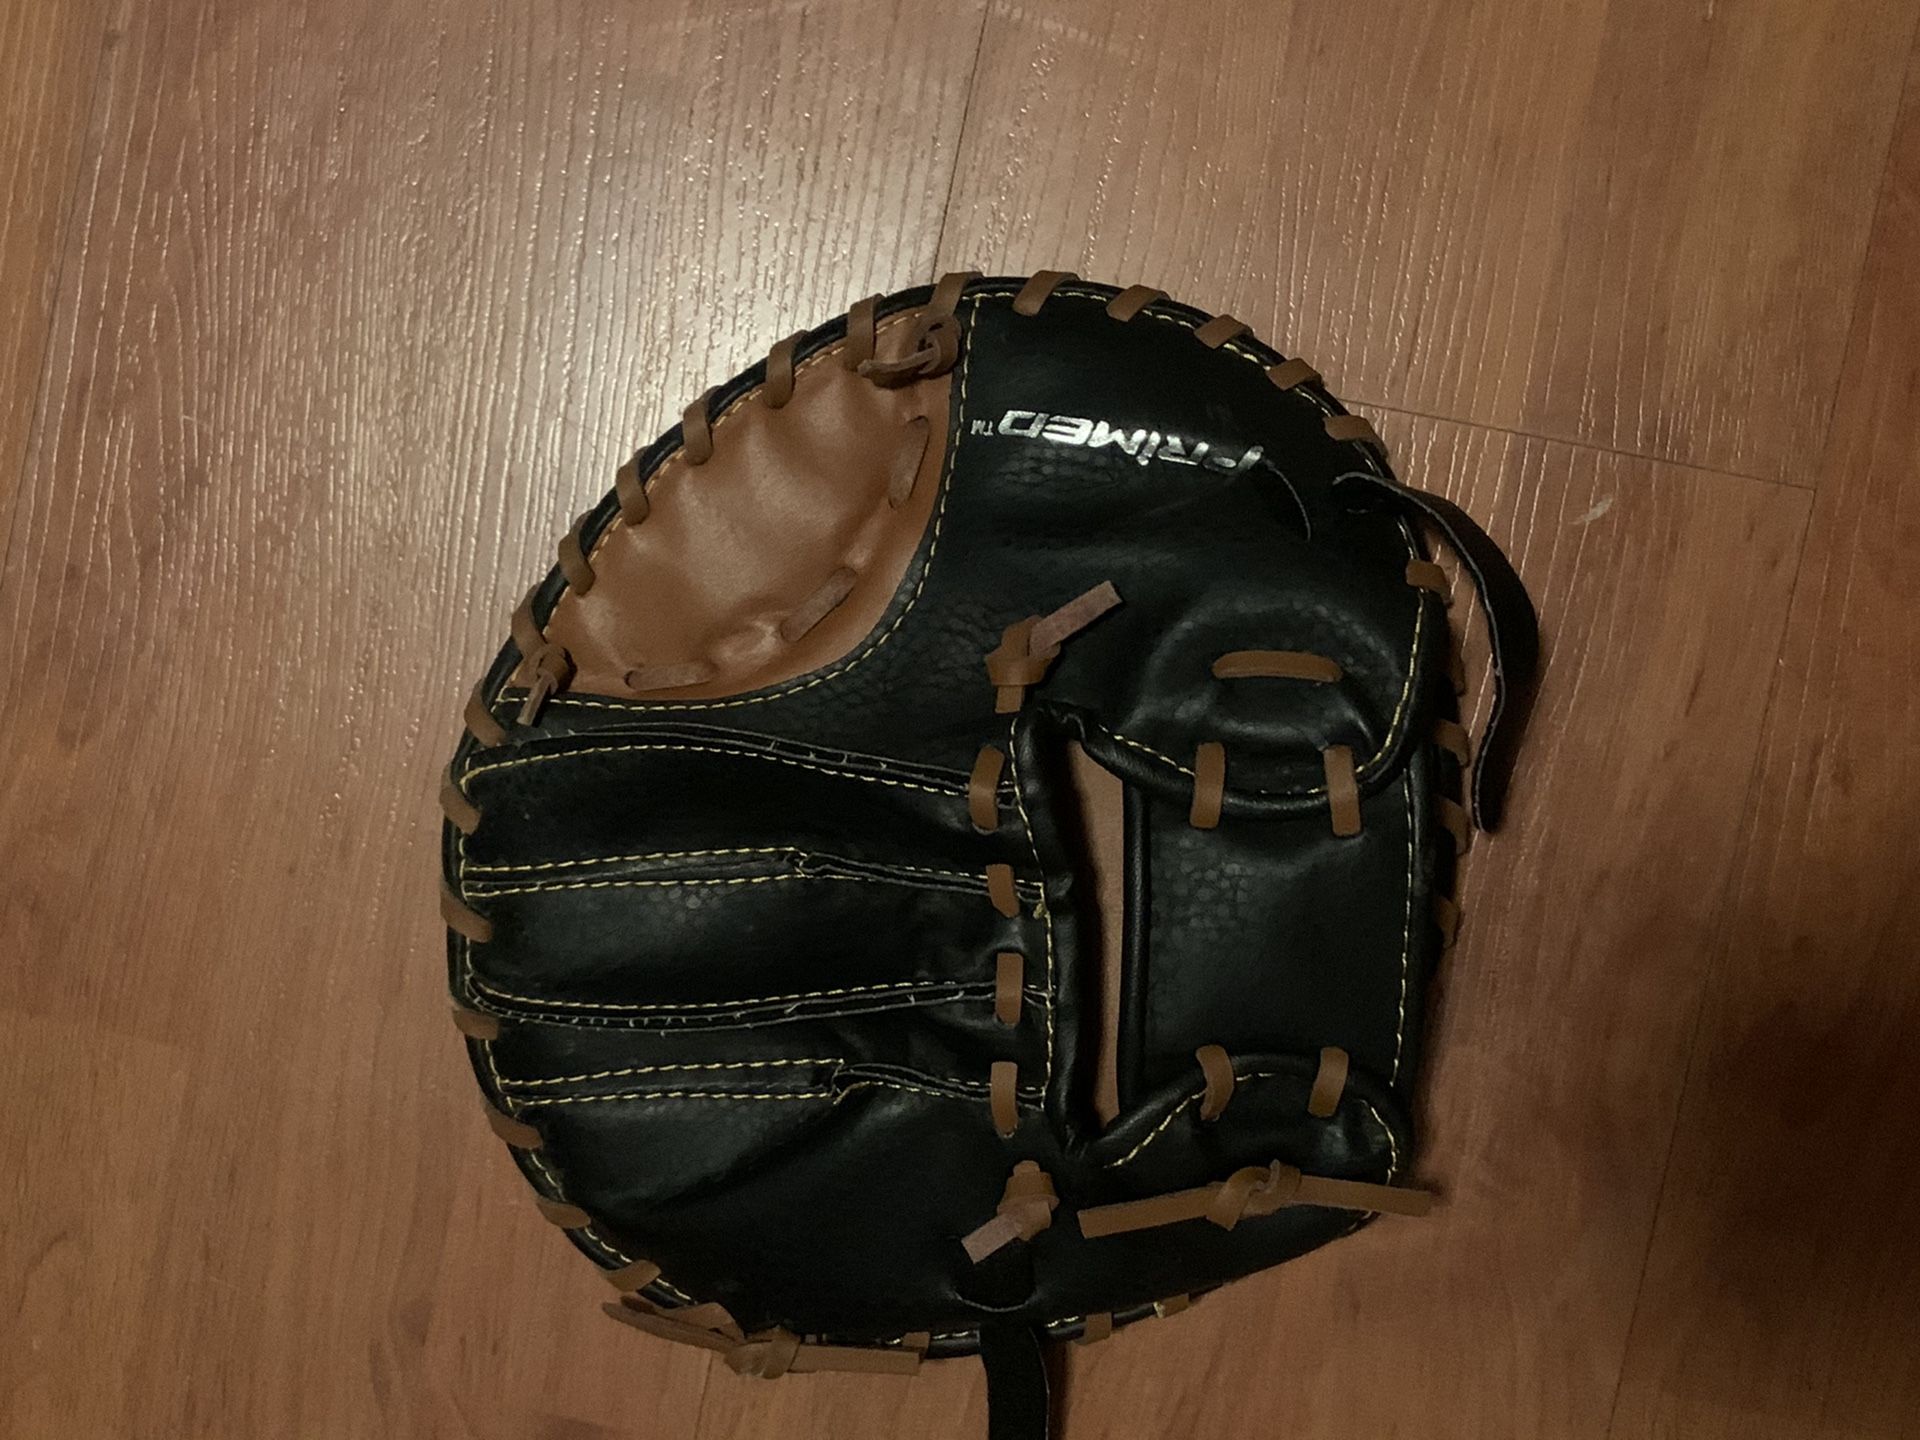 one hand training glove (baseball/softball)